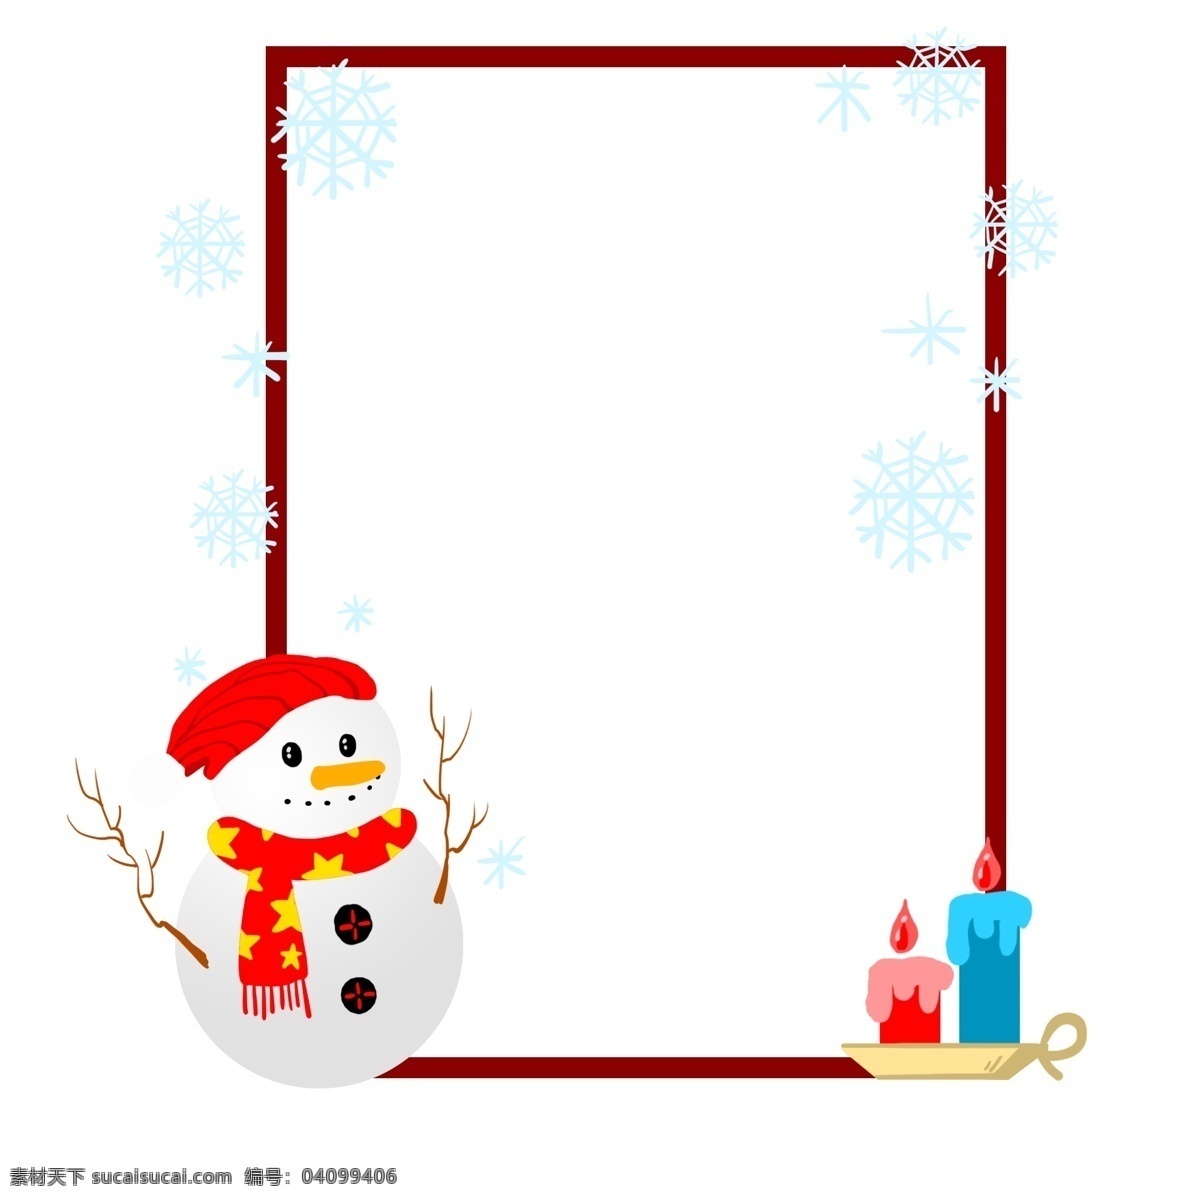 手绘 圣诞节 蜡烛 边框 插画 创意 欢庆圣诞节 雪人蜡烛 愉快的圣诞节 可以 收礼 物 节日